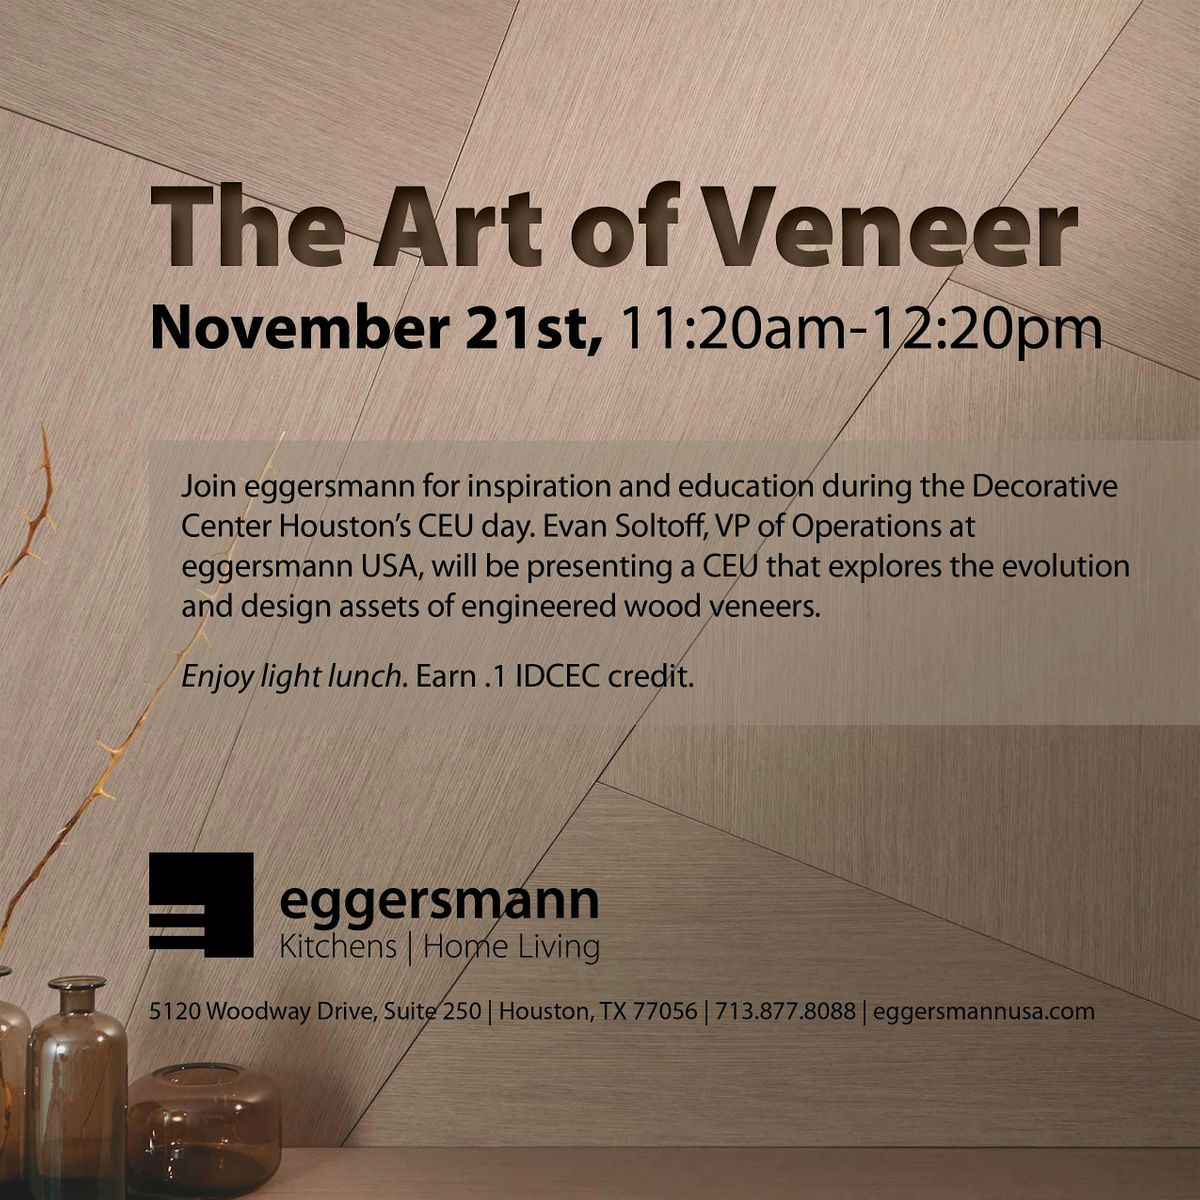 The Art of Veneer